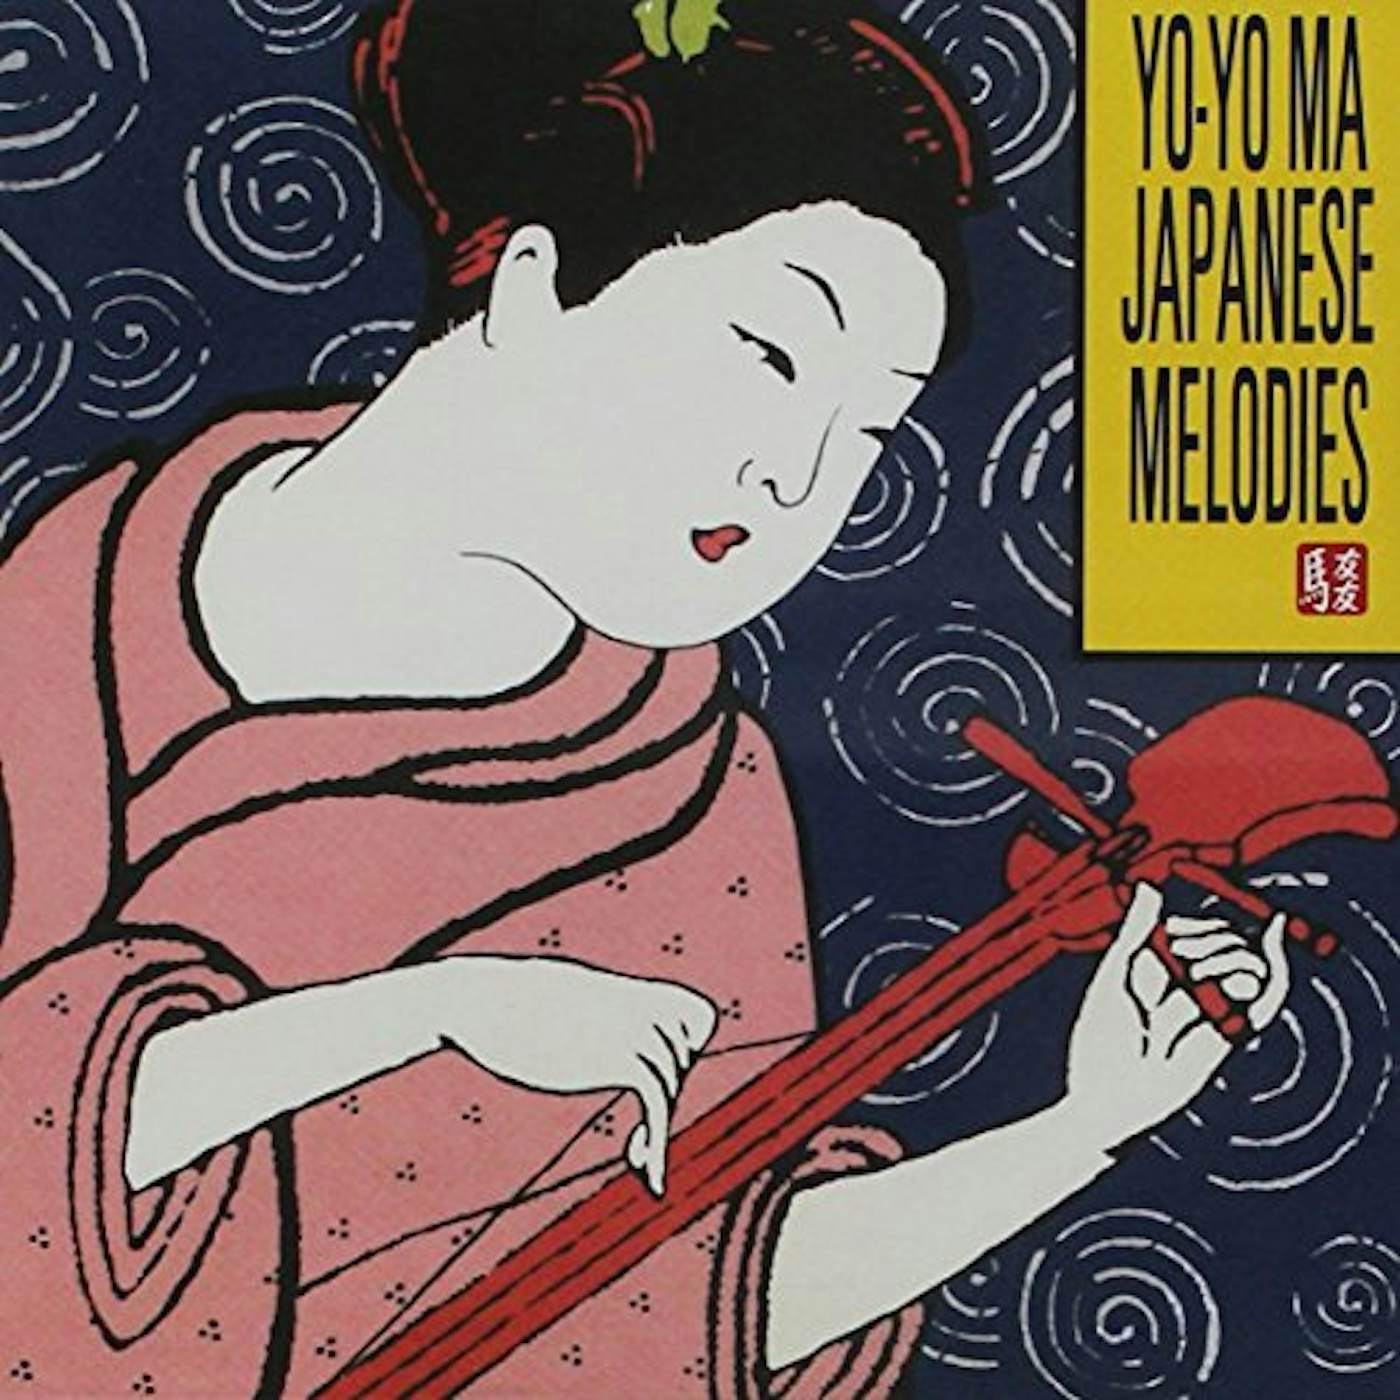 Yo-Yo Ma JAPANESE MELODIES CD Super Audio CD